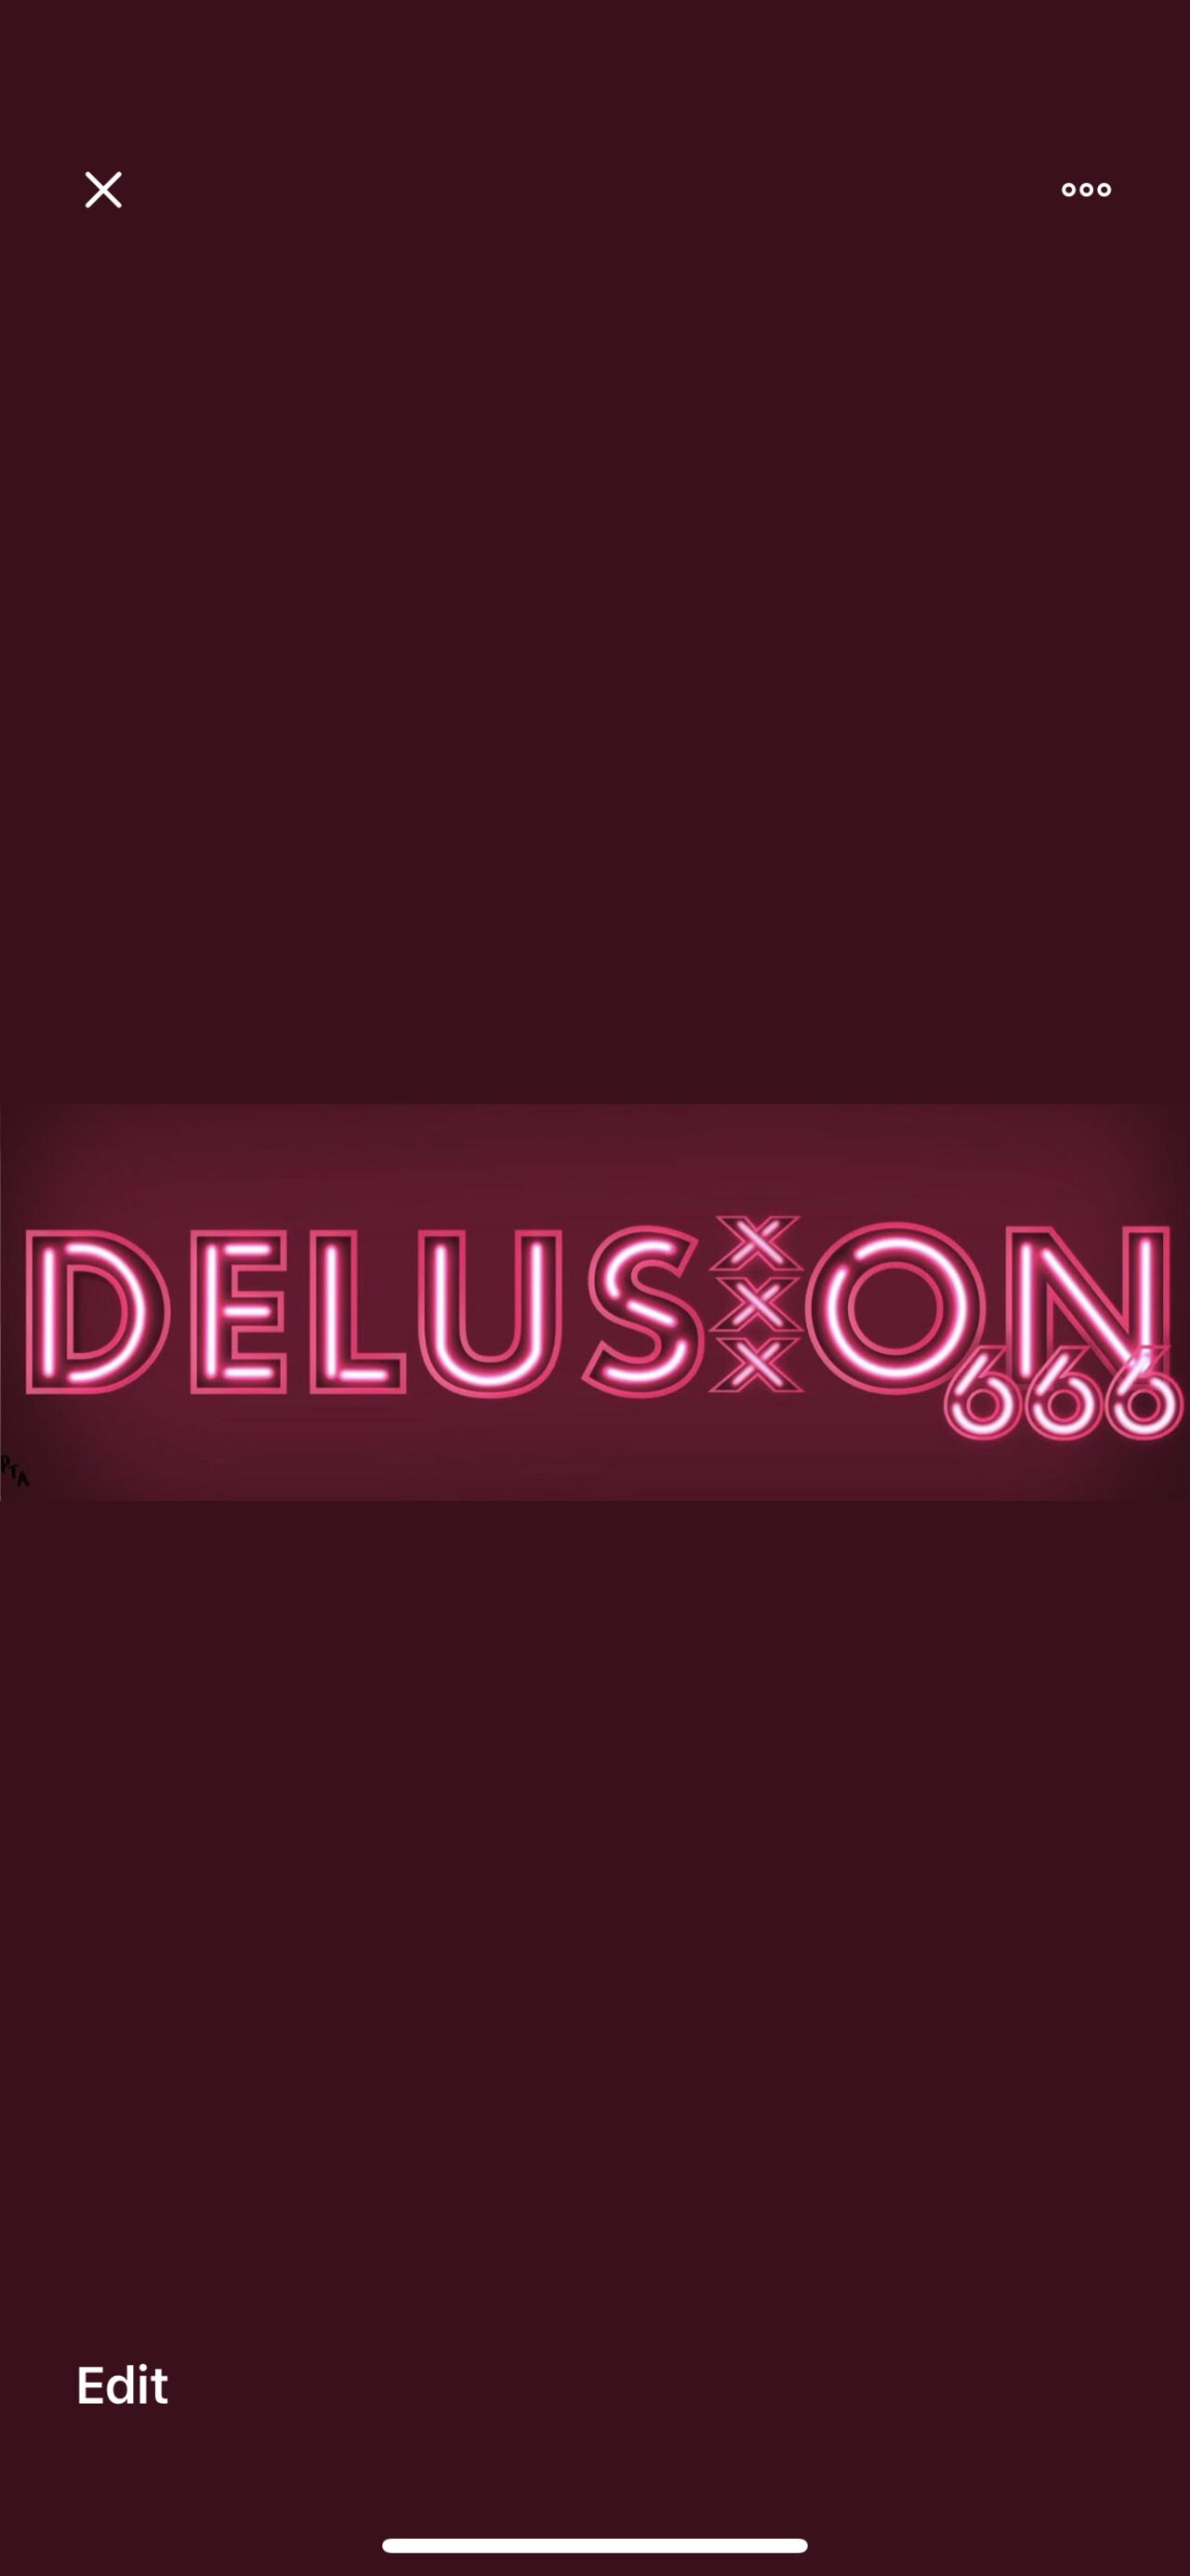 delusion666